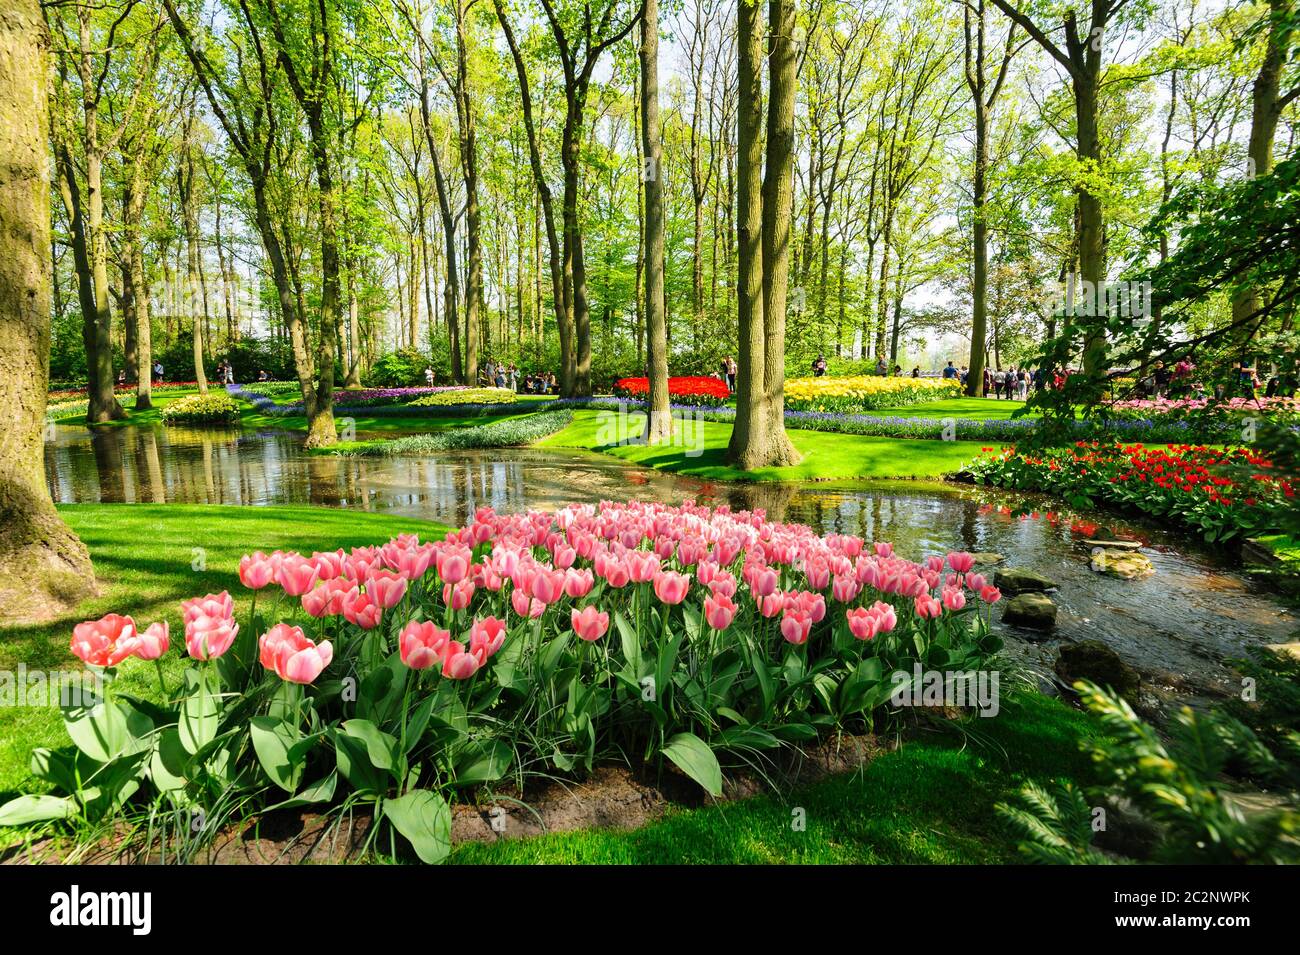 Flower beds of Keukenhof Gardens in Lisse, Netherlands Stock Photo